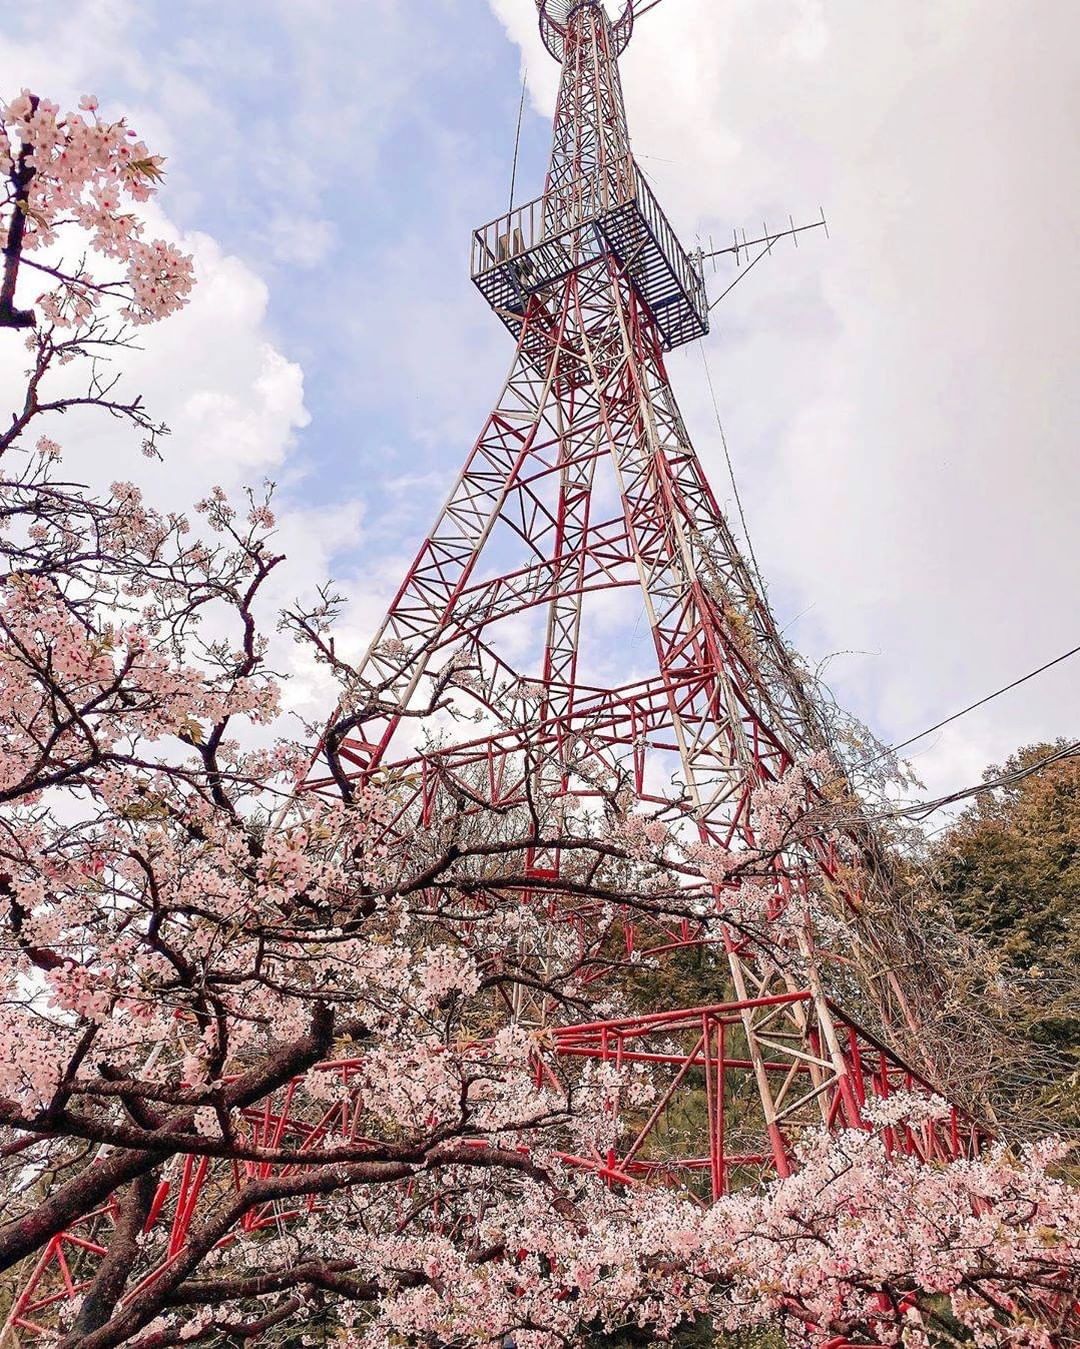 這個有像艾菲爾鐵塔不過這個比較漂亮有櫻花-⠀⠀⠀⠀⠀⠀⠀⠀⠀⠀⠀感謝 @fenfen_13 分享的美照-⠀⠀⠀⠀⠀⠀⠀⠀⠀⠀⠀⠀ ...